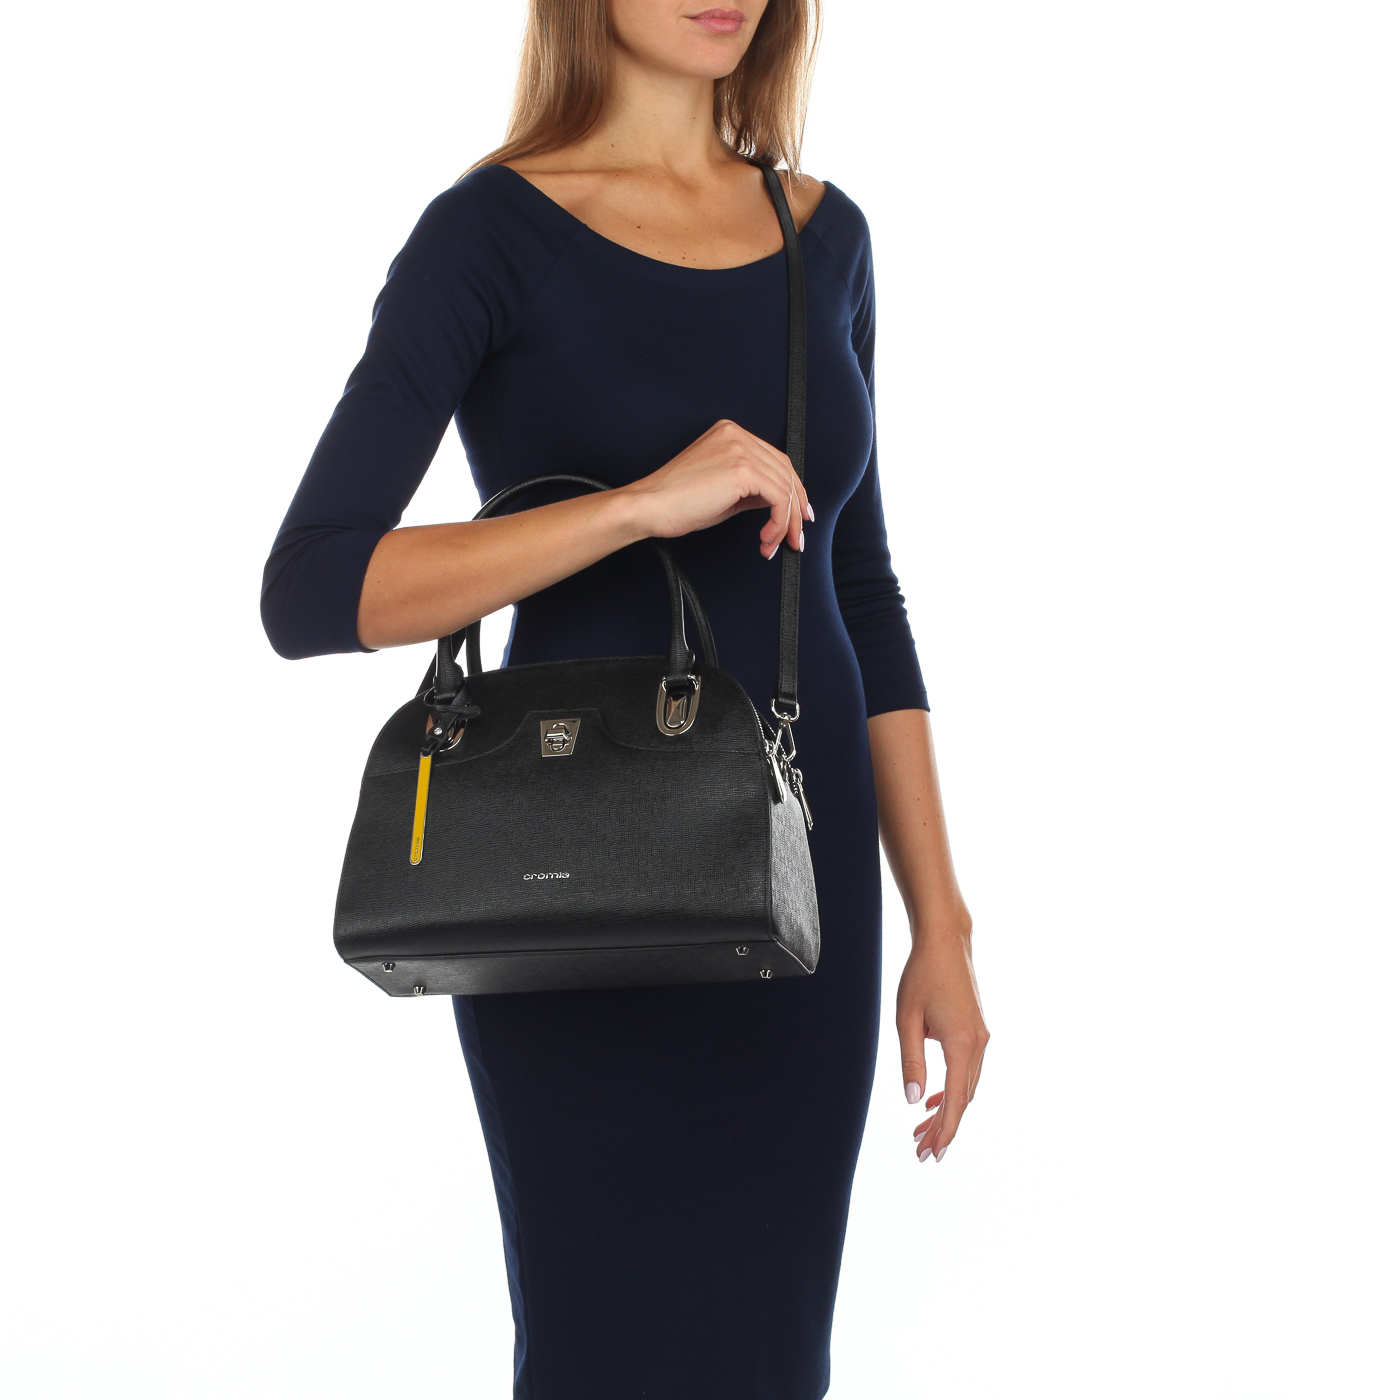 Сафьяновая сумка со съемным ремешком Cromia Mina